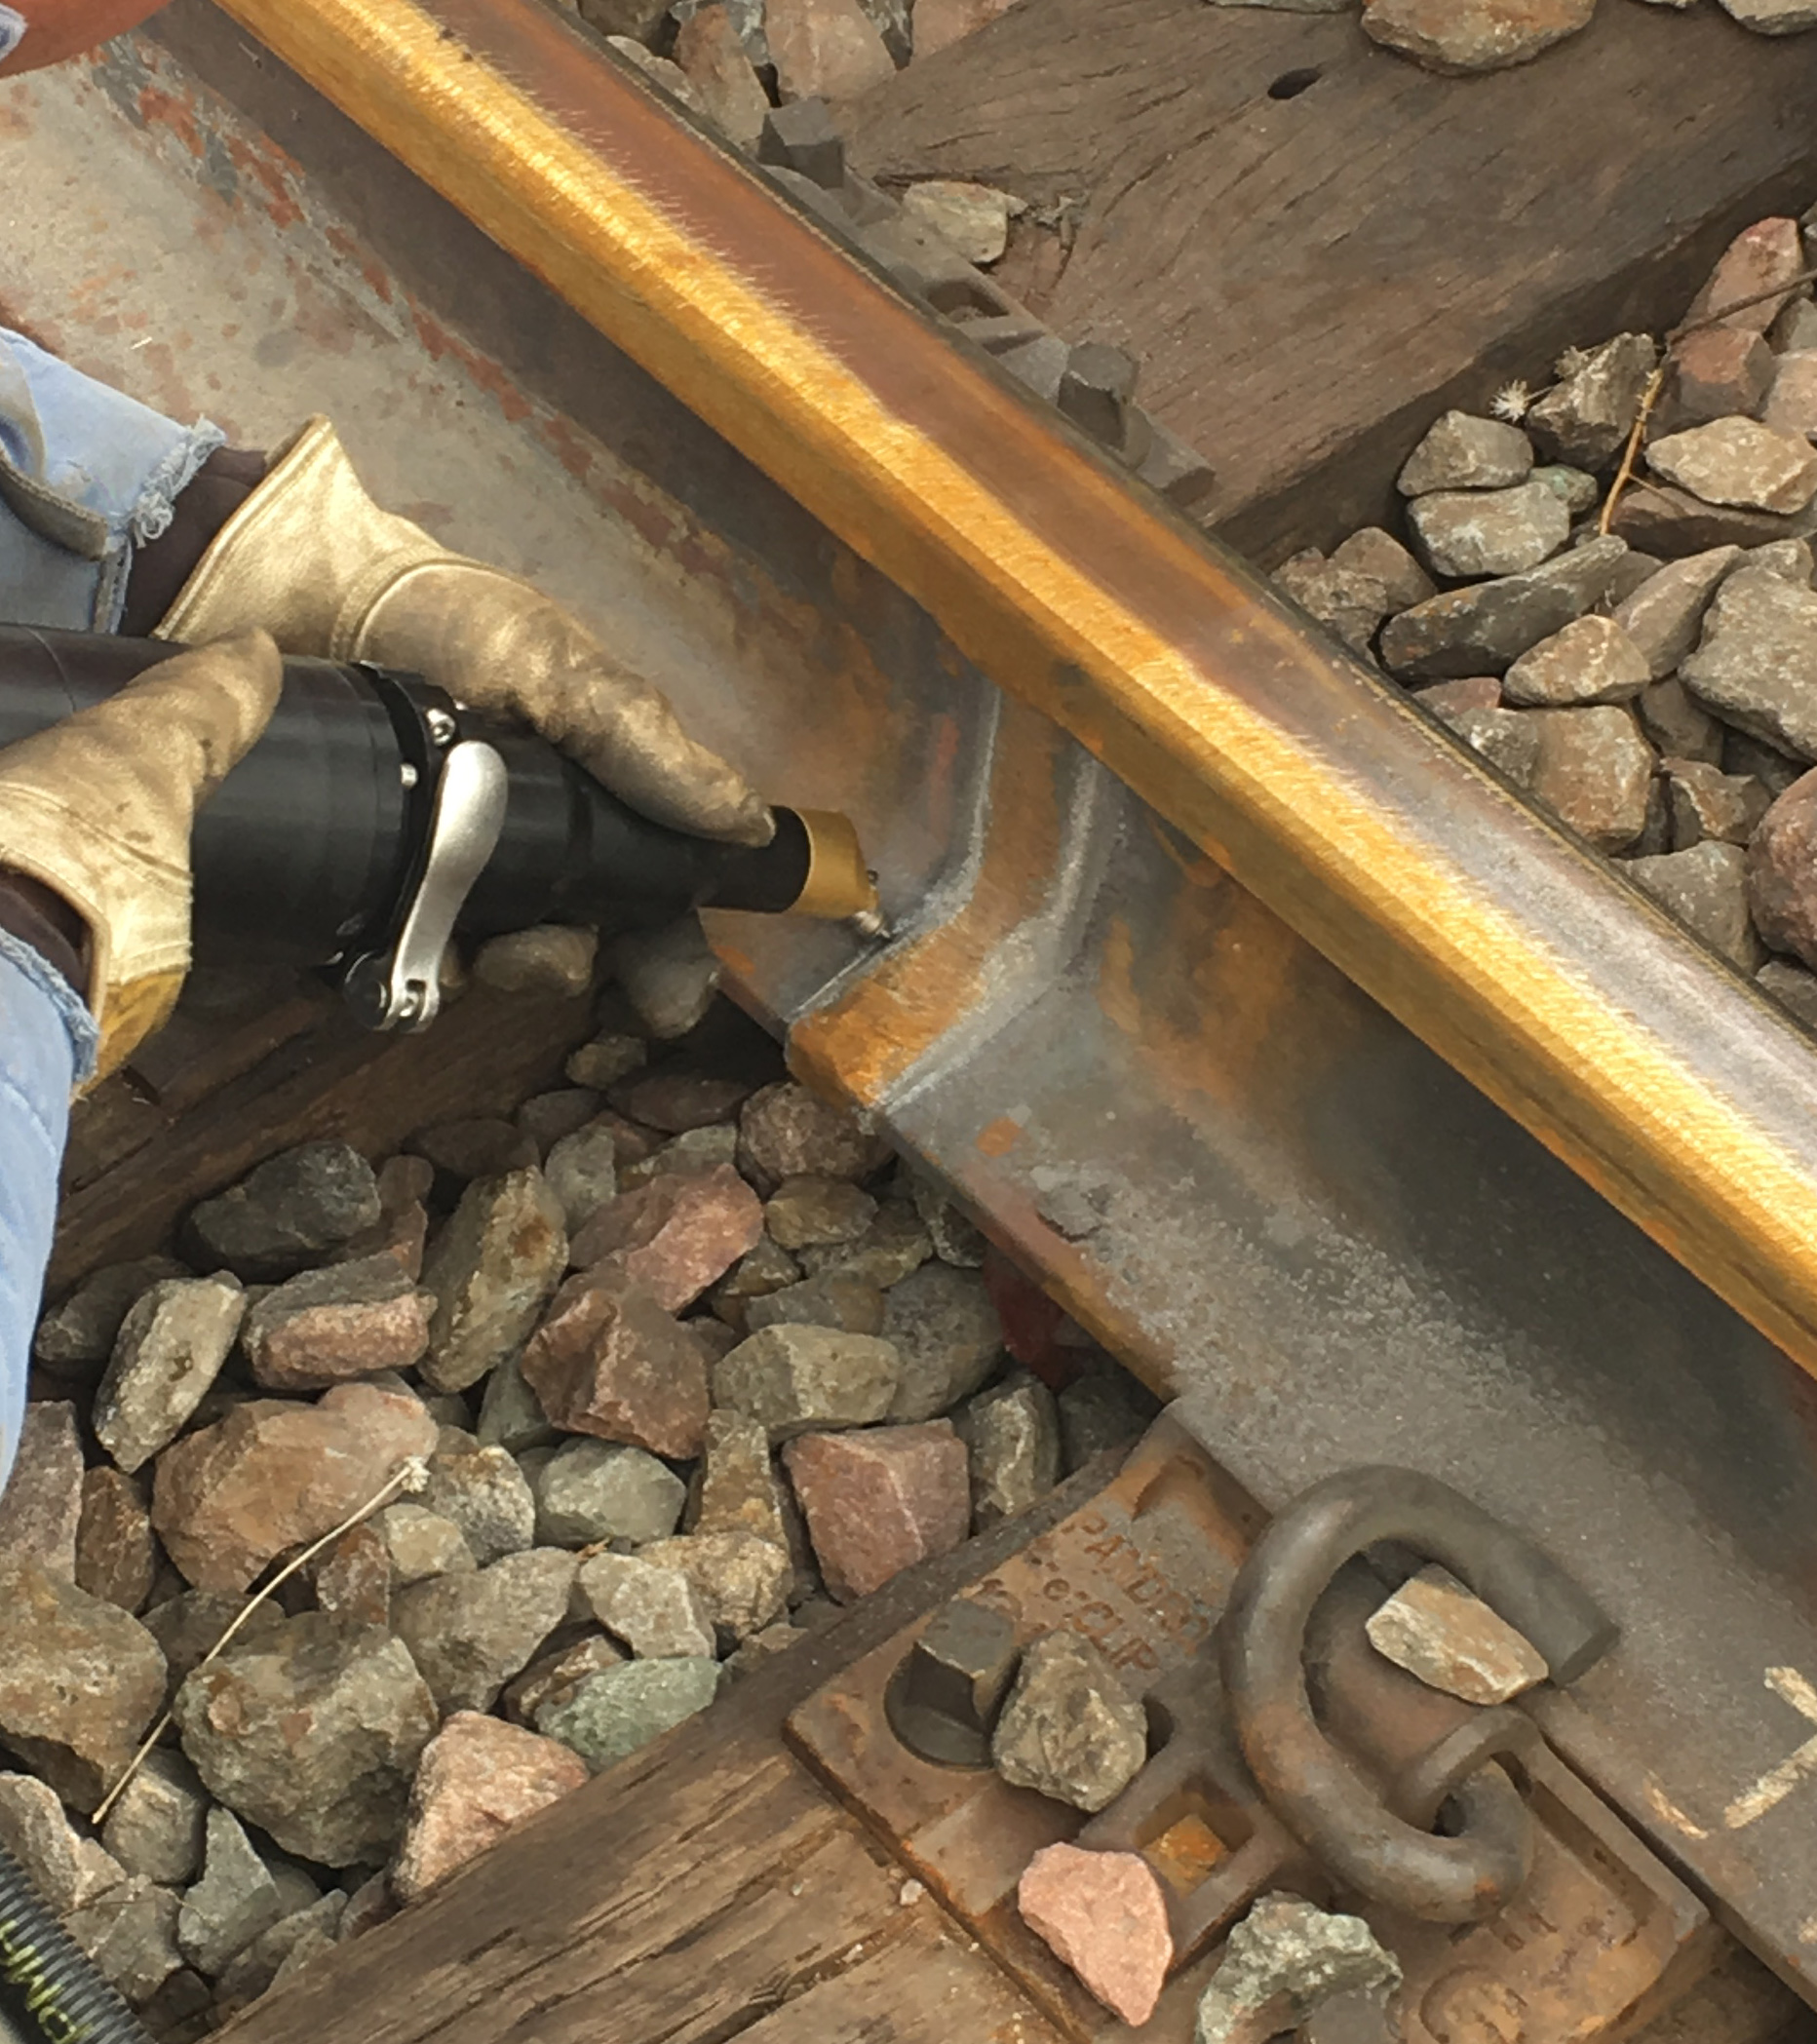 Railway track repairs - Ultrasonic impact treatment equipment | Empowering Technologies